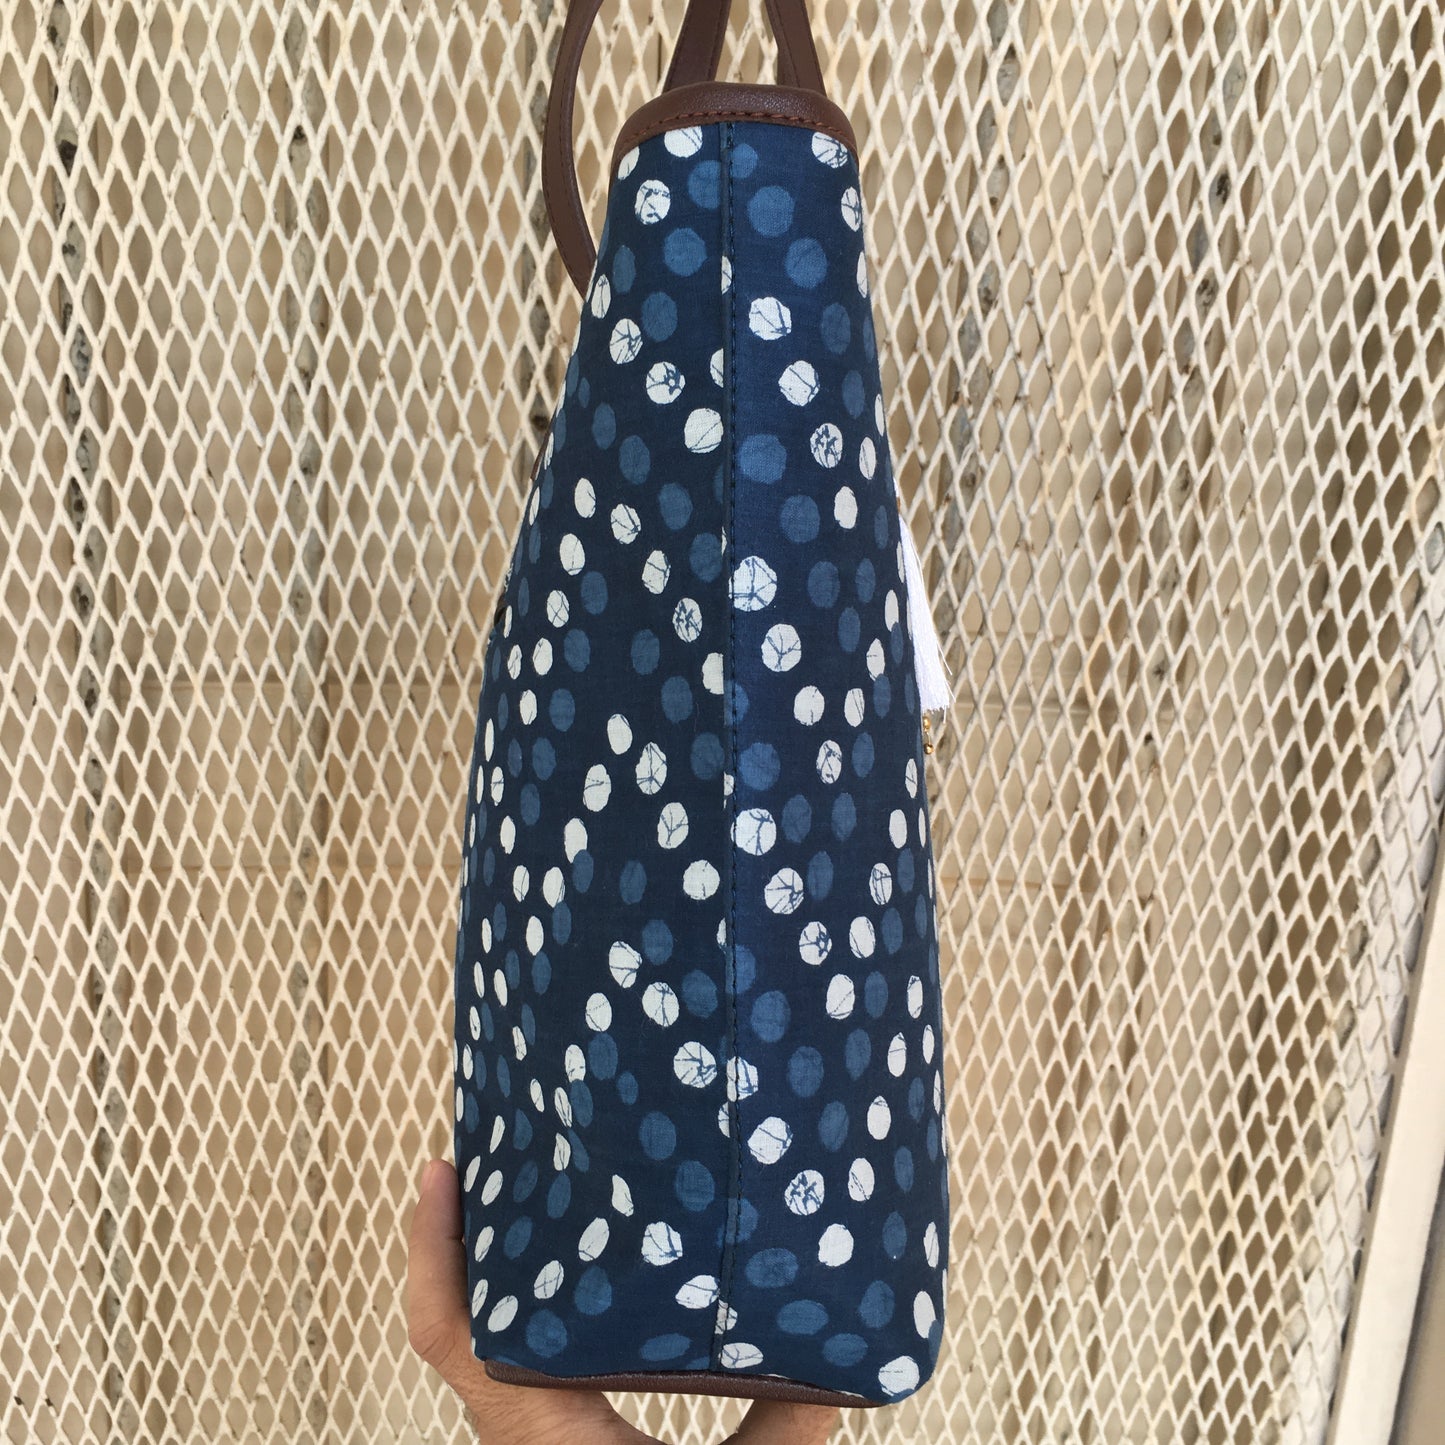 Blue Polka Dots - Printed Tote Bag